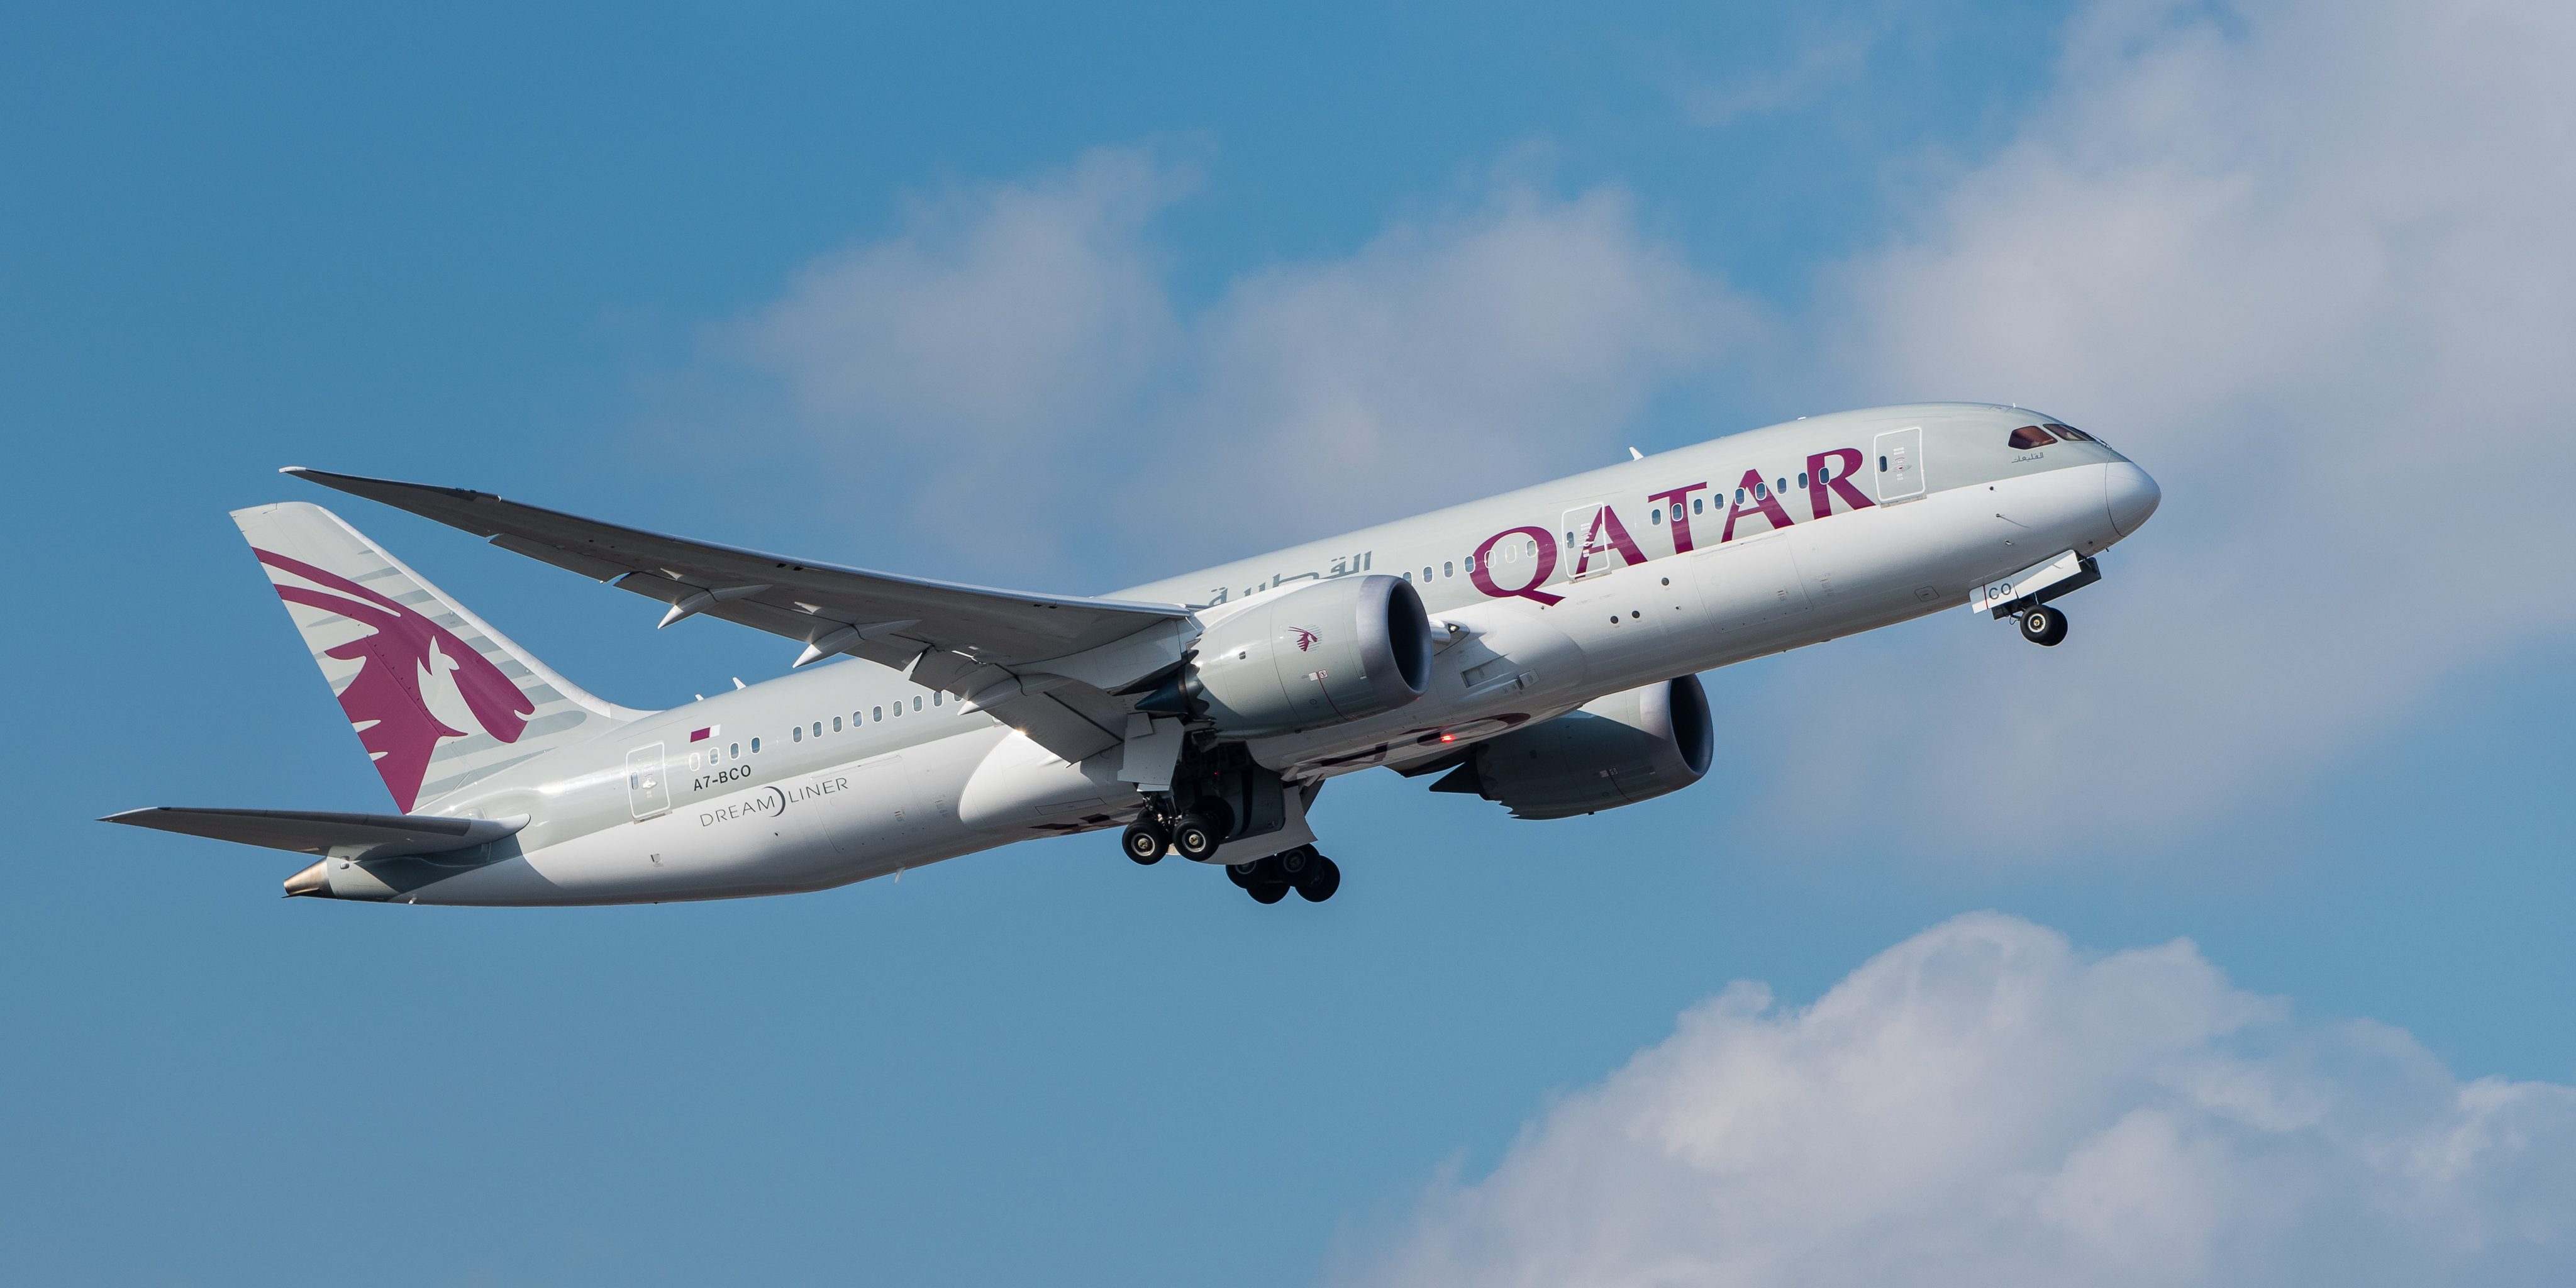 Qatar Airways Boeing 787 8 Dreamliner A7 Bco Muc 2015 - Qatar Airways A350 900 Tokyo , HD Wallpaper & Backgrounds